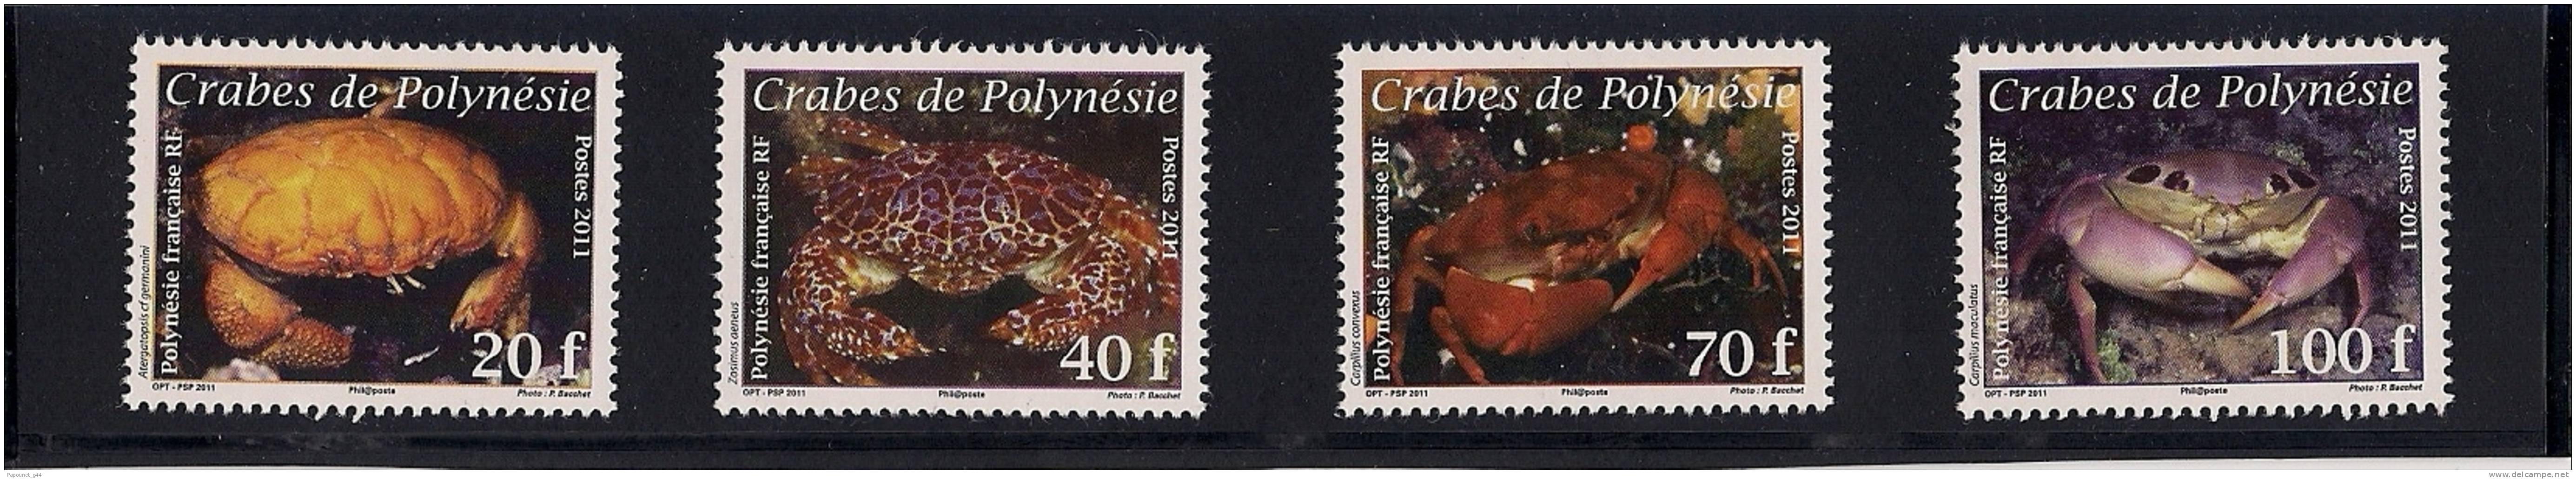 Polynésie ( Crabes De Polynésie 2011 ) - Neufs